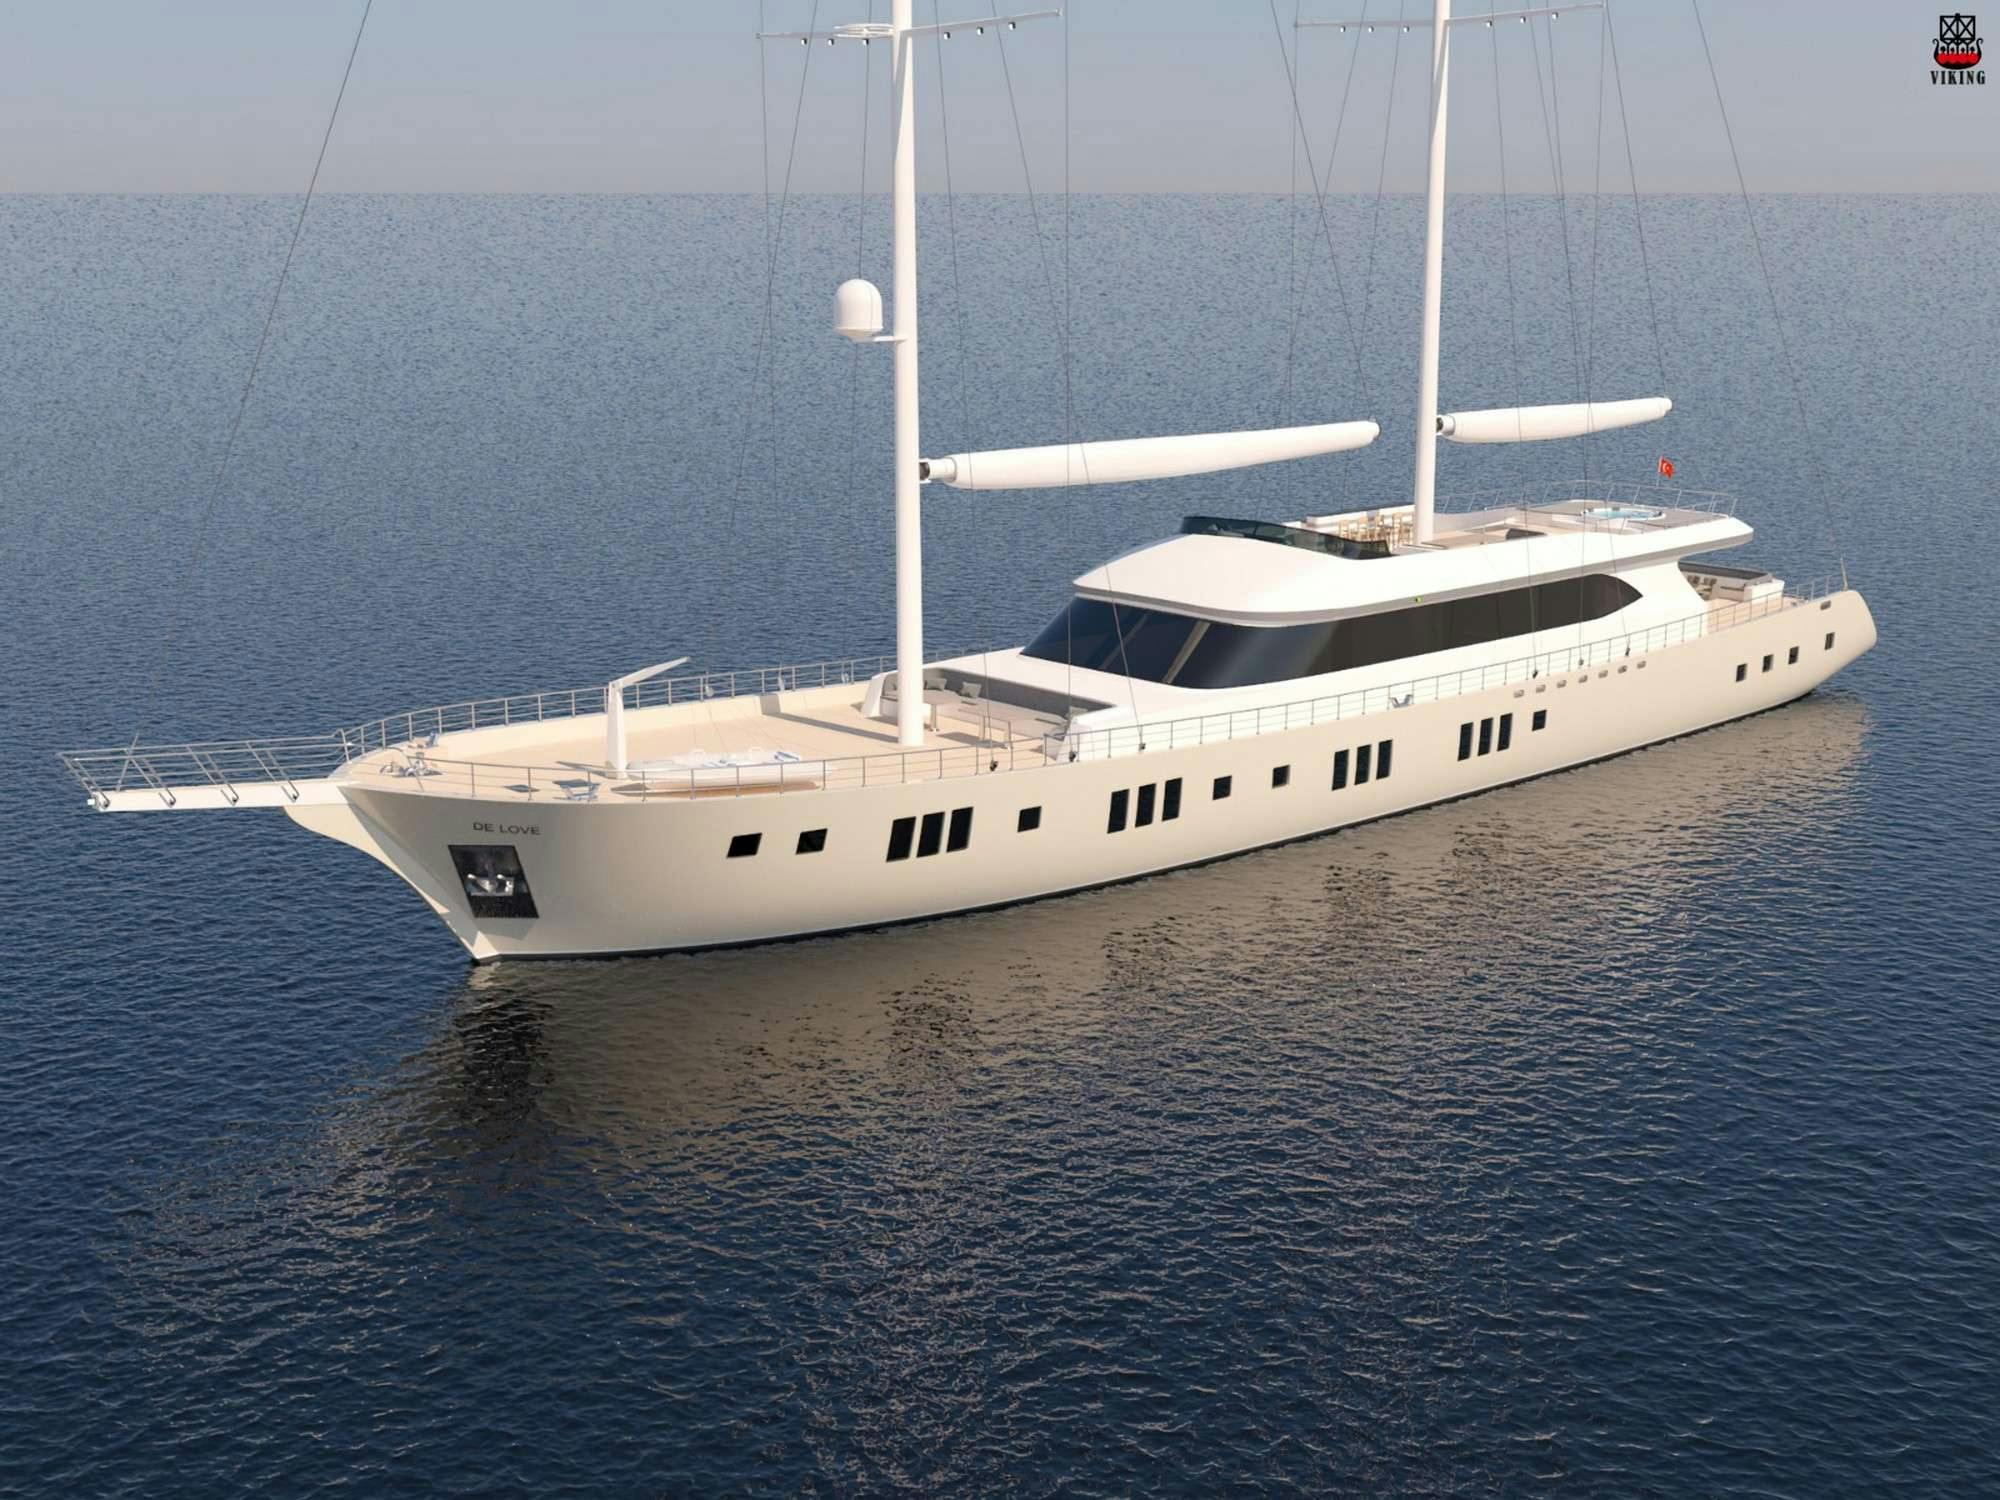 DE LOVE - Yacht Charter Antalya & Boat hire in Turkey 1